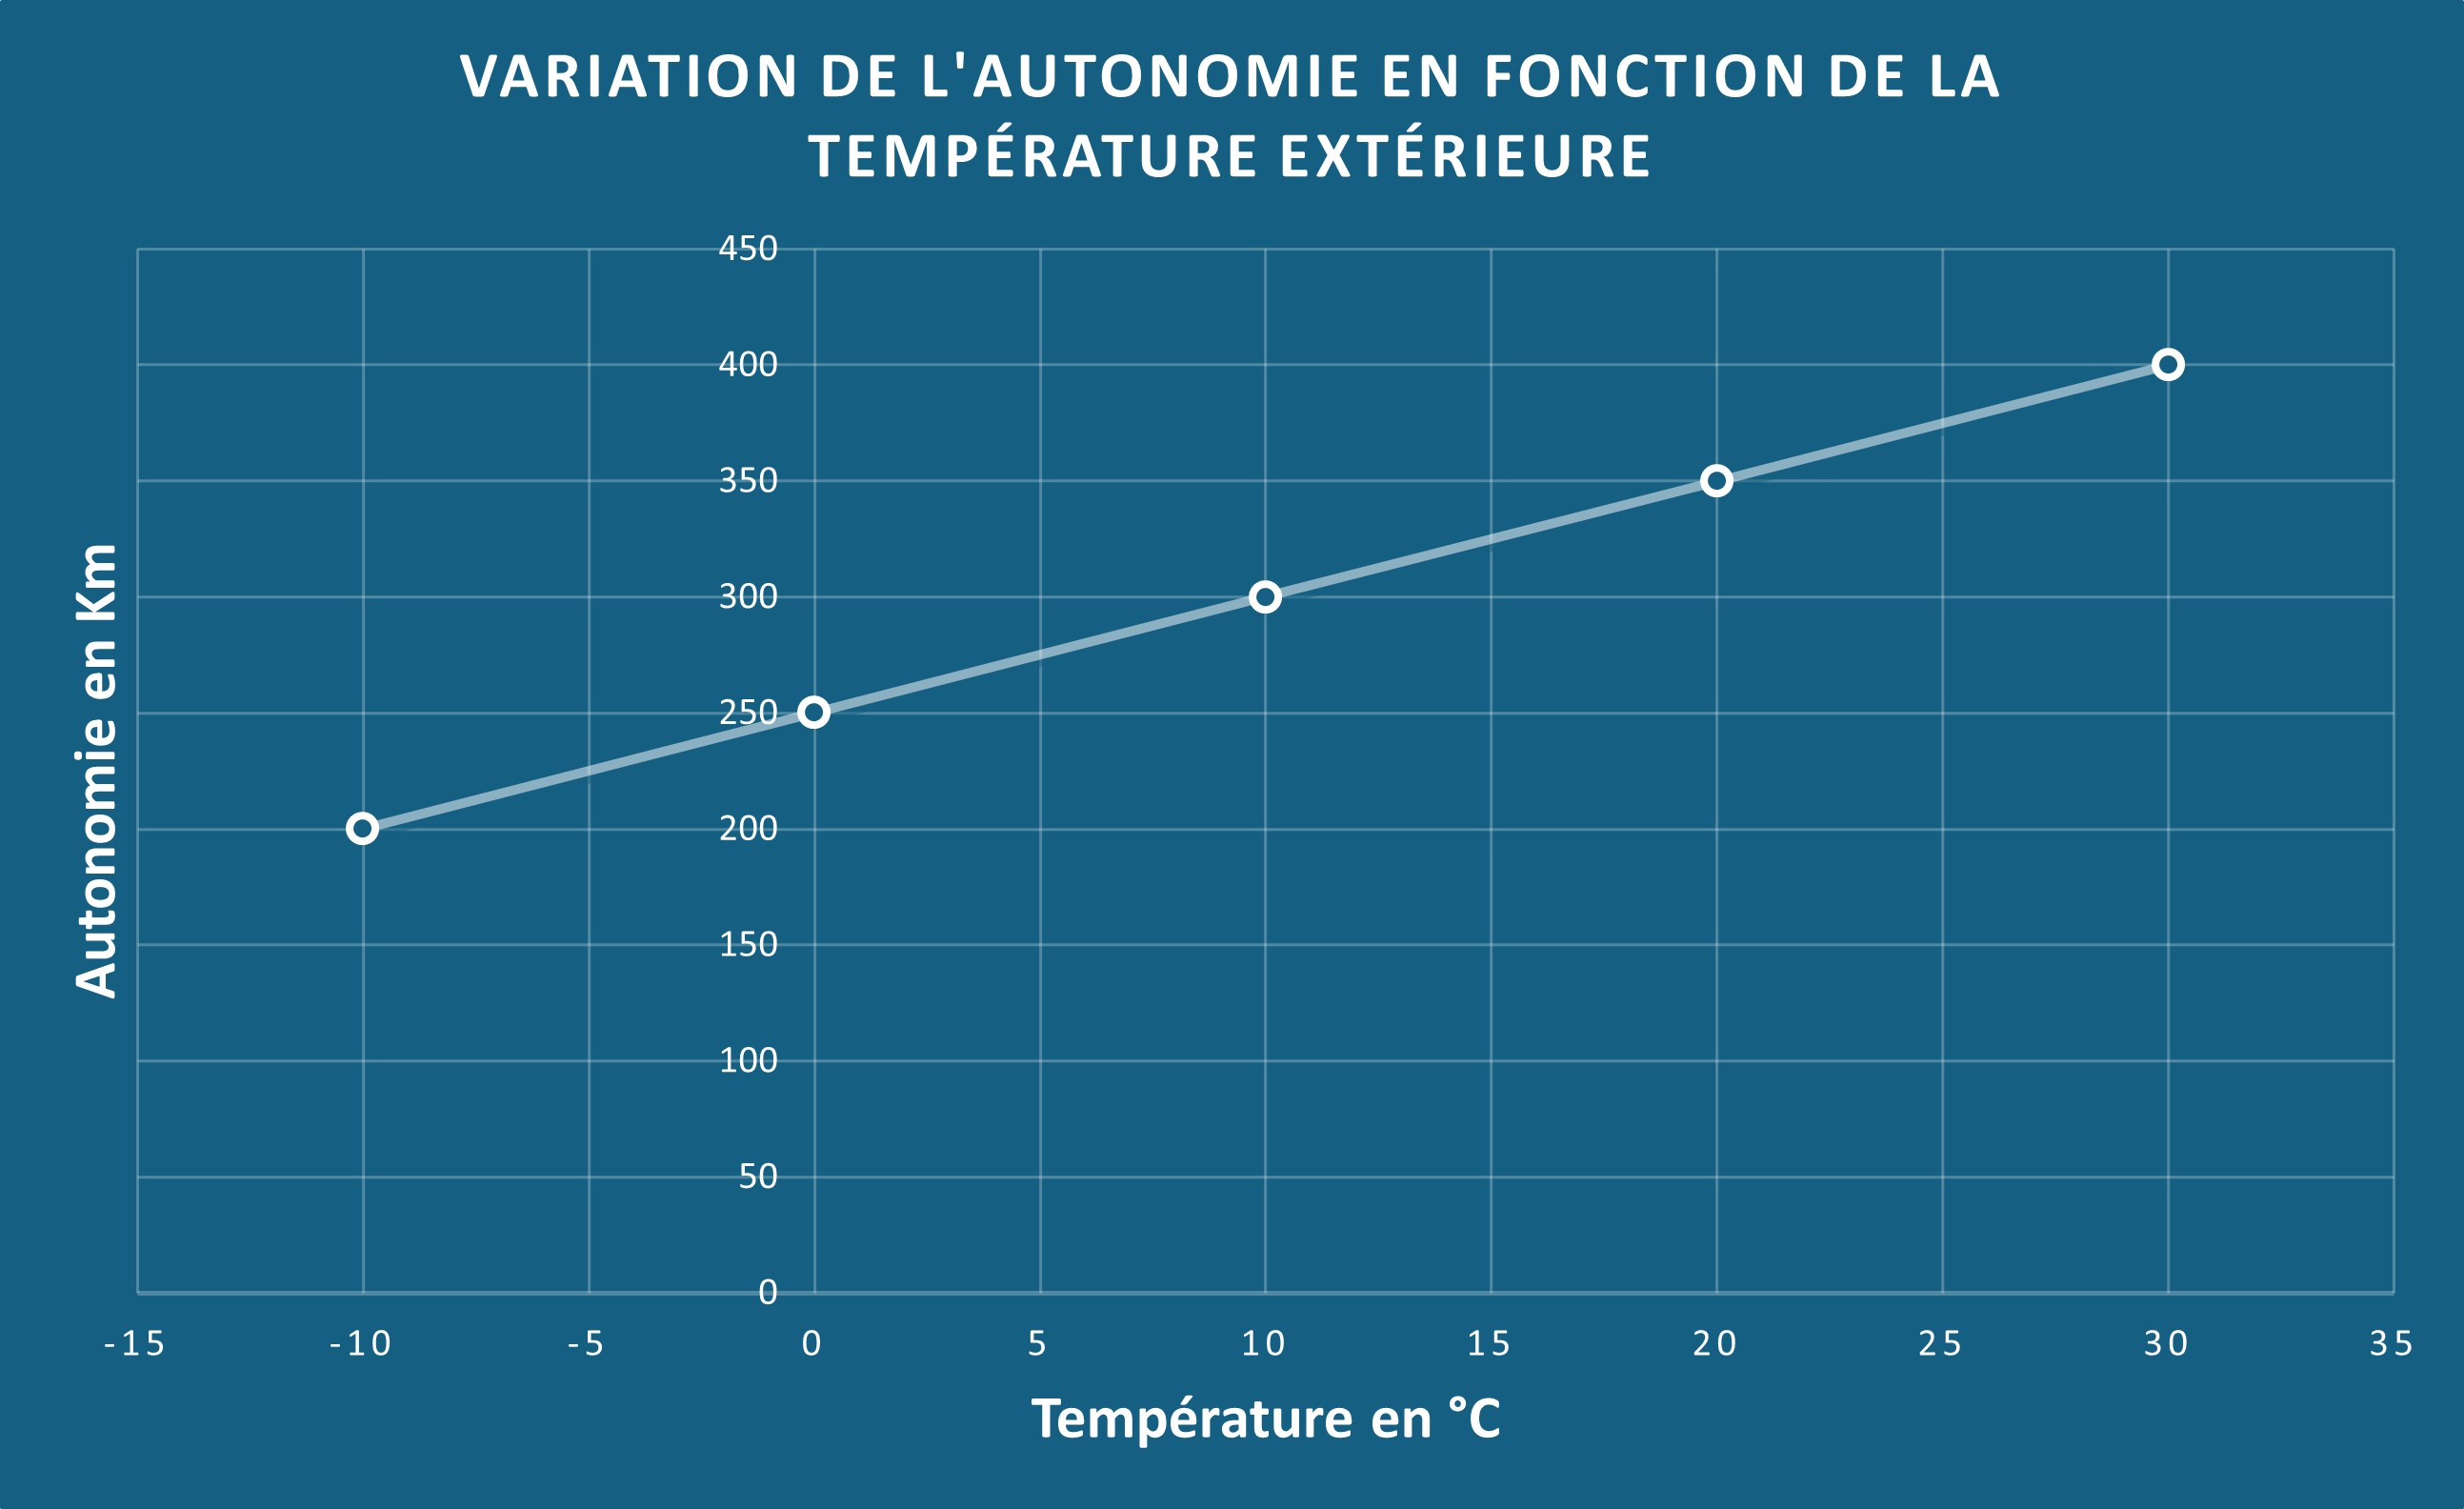 Variation de l'autonomie de la voiture en fonction de la température extérieure